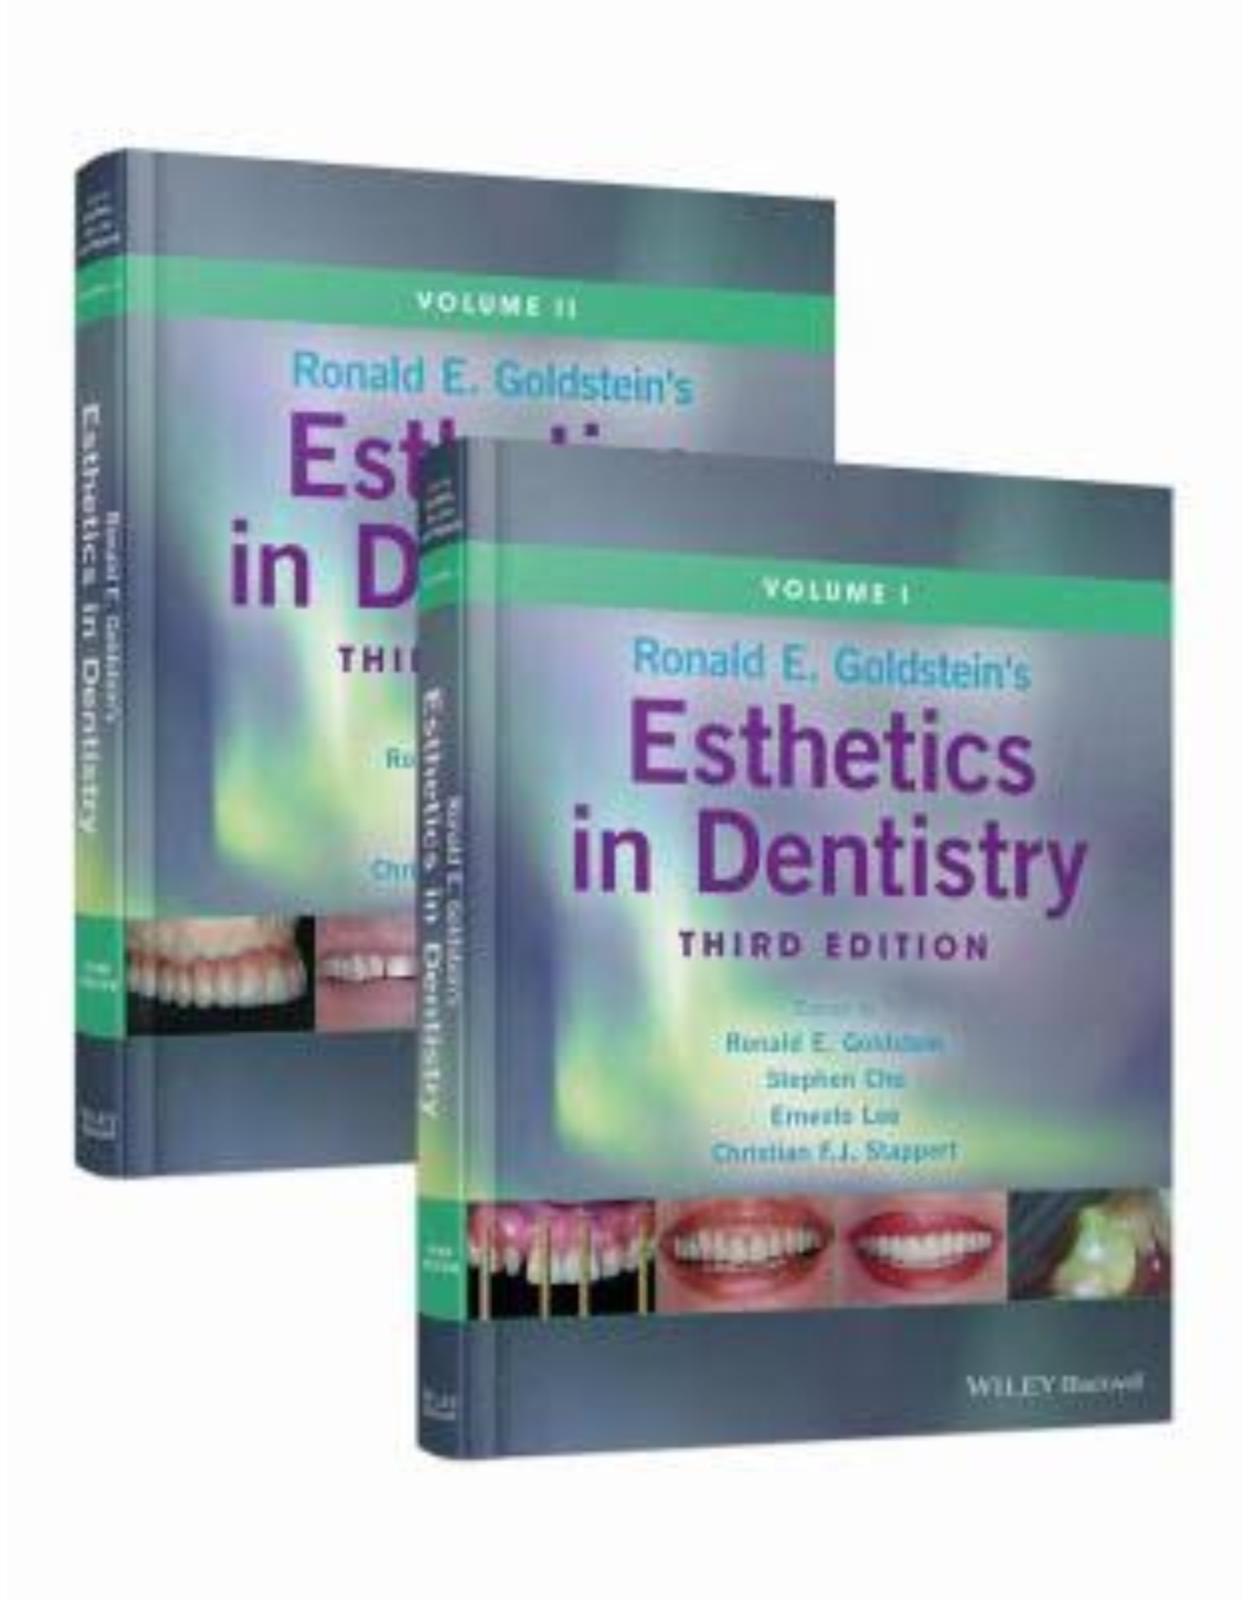 Ronald E. Goldstein’s Esthetics in Dentistry